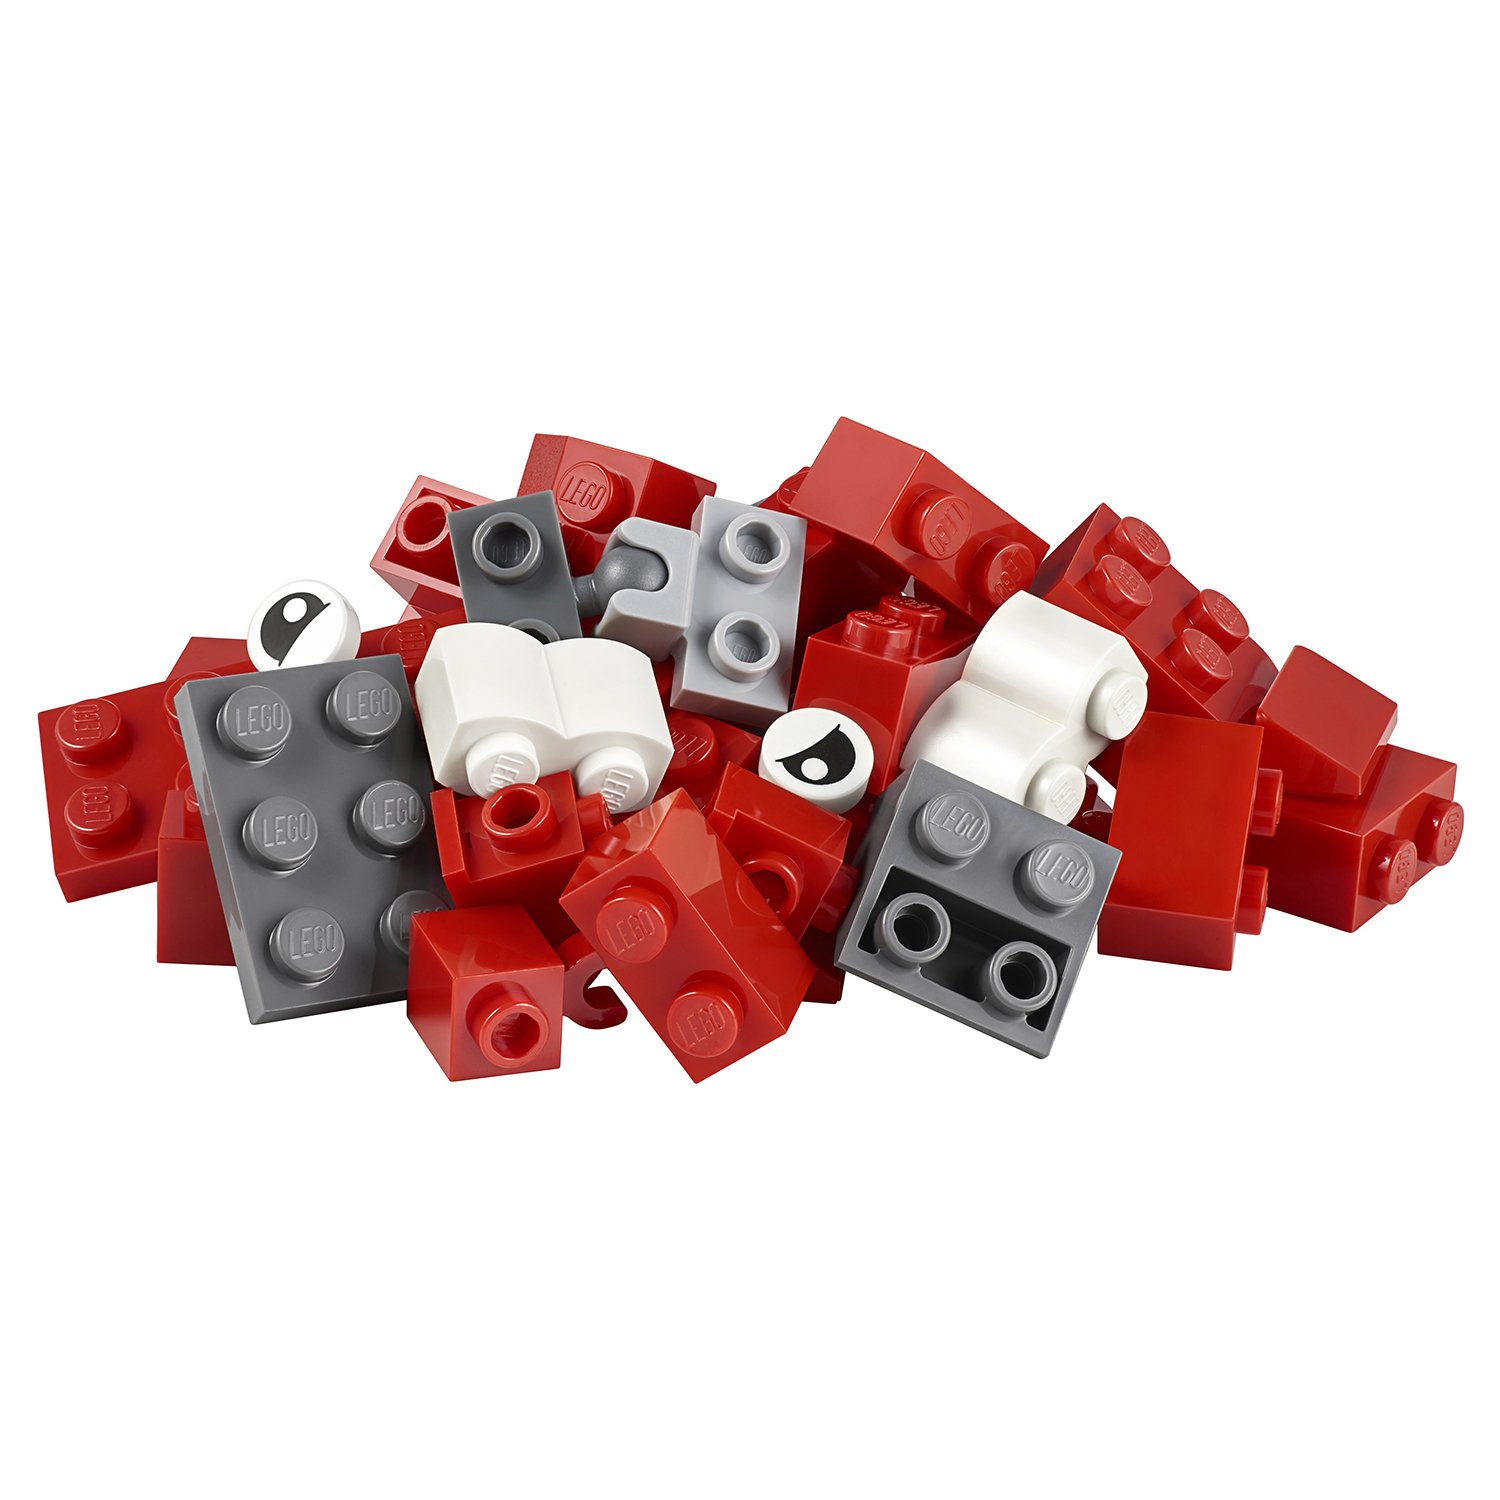 Lego Classic 11001 Модели из кубиков